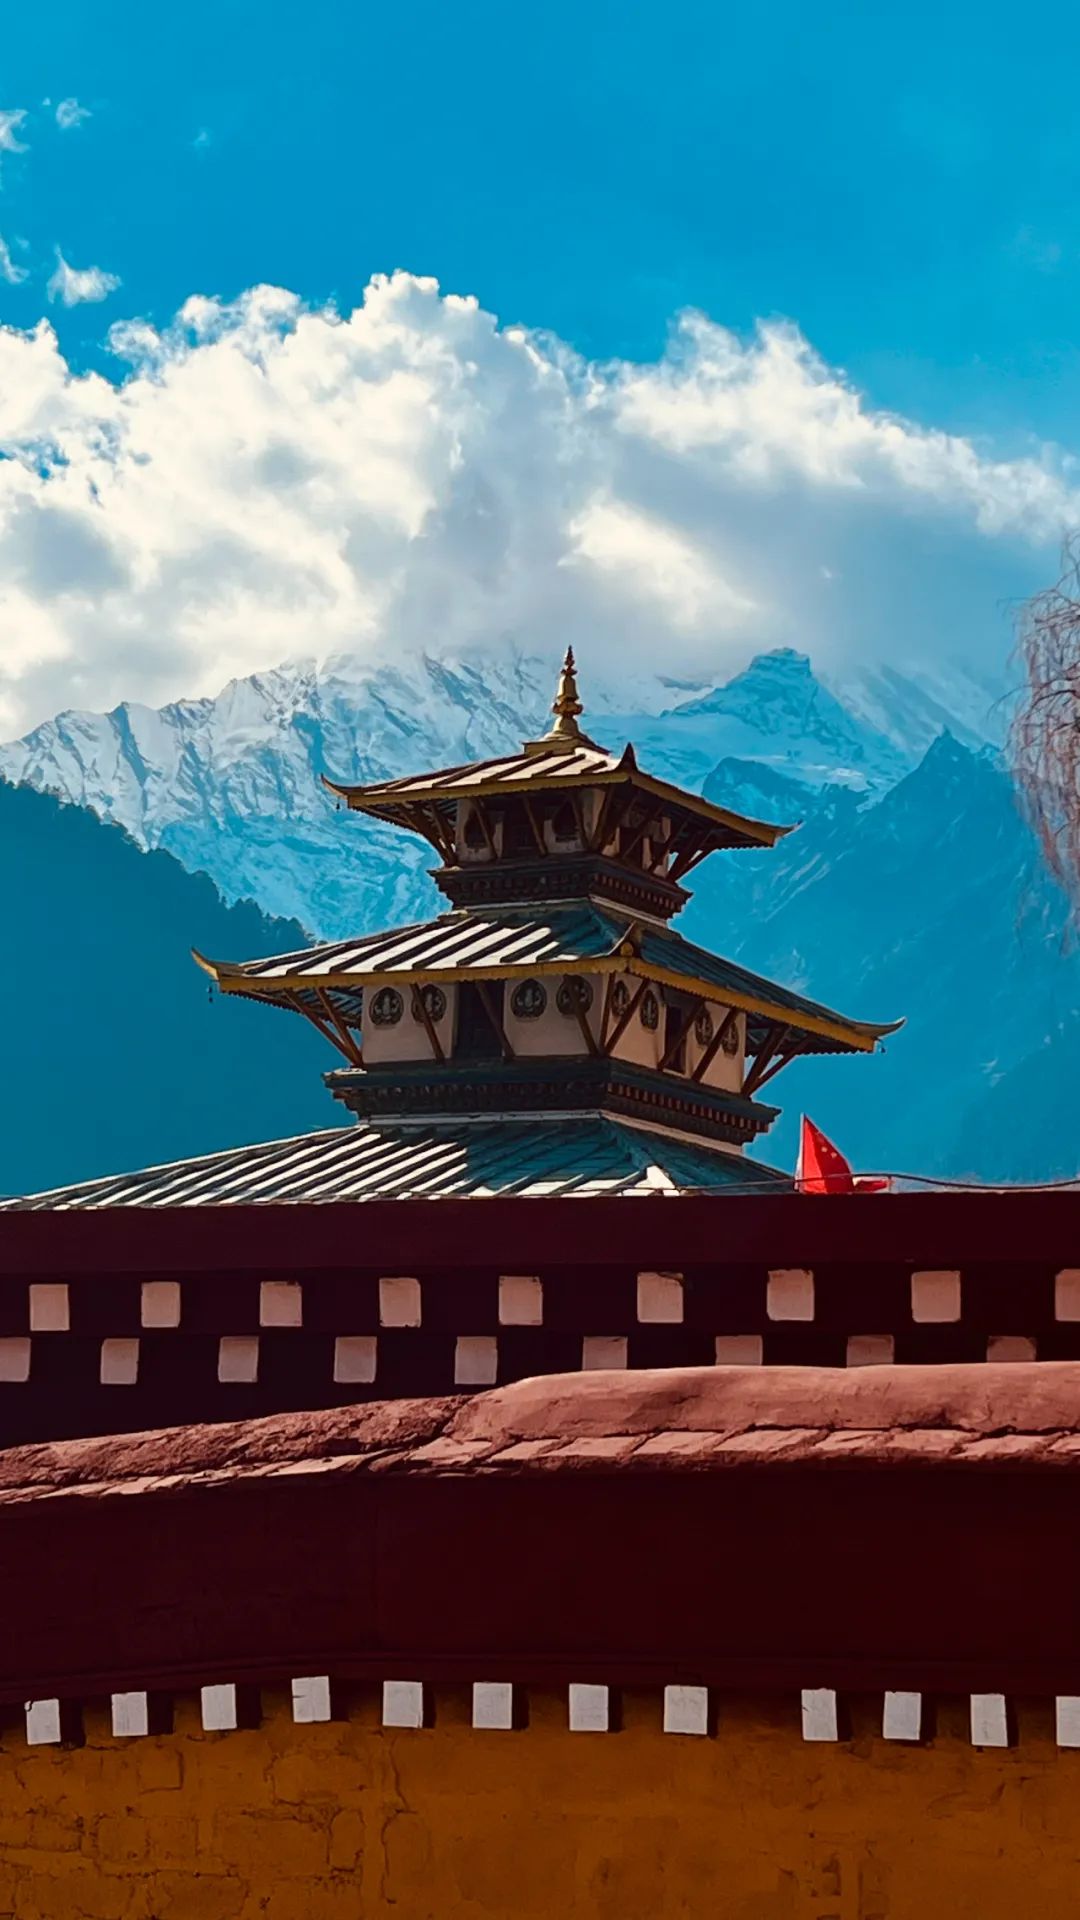 央措在尼泊尔图片